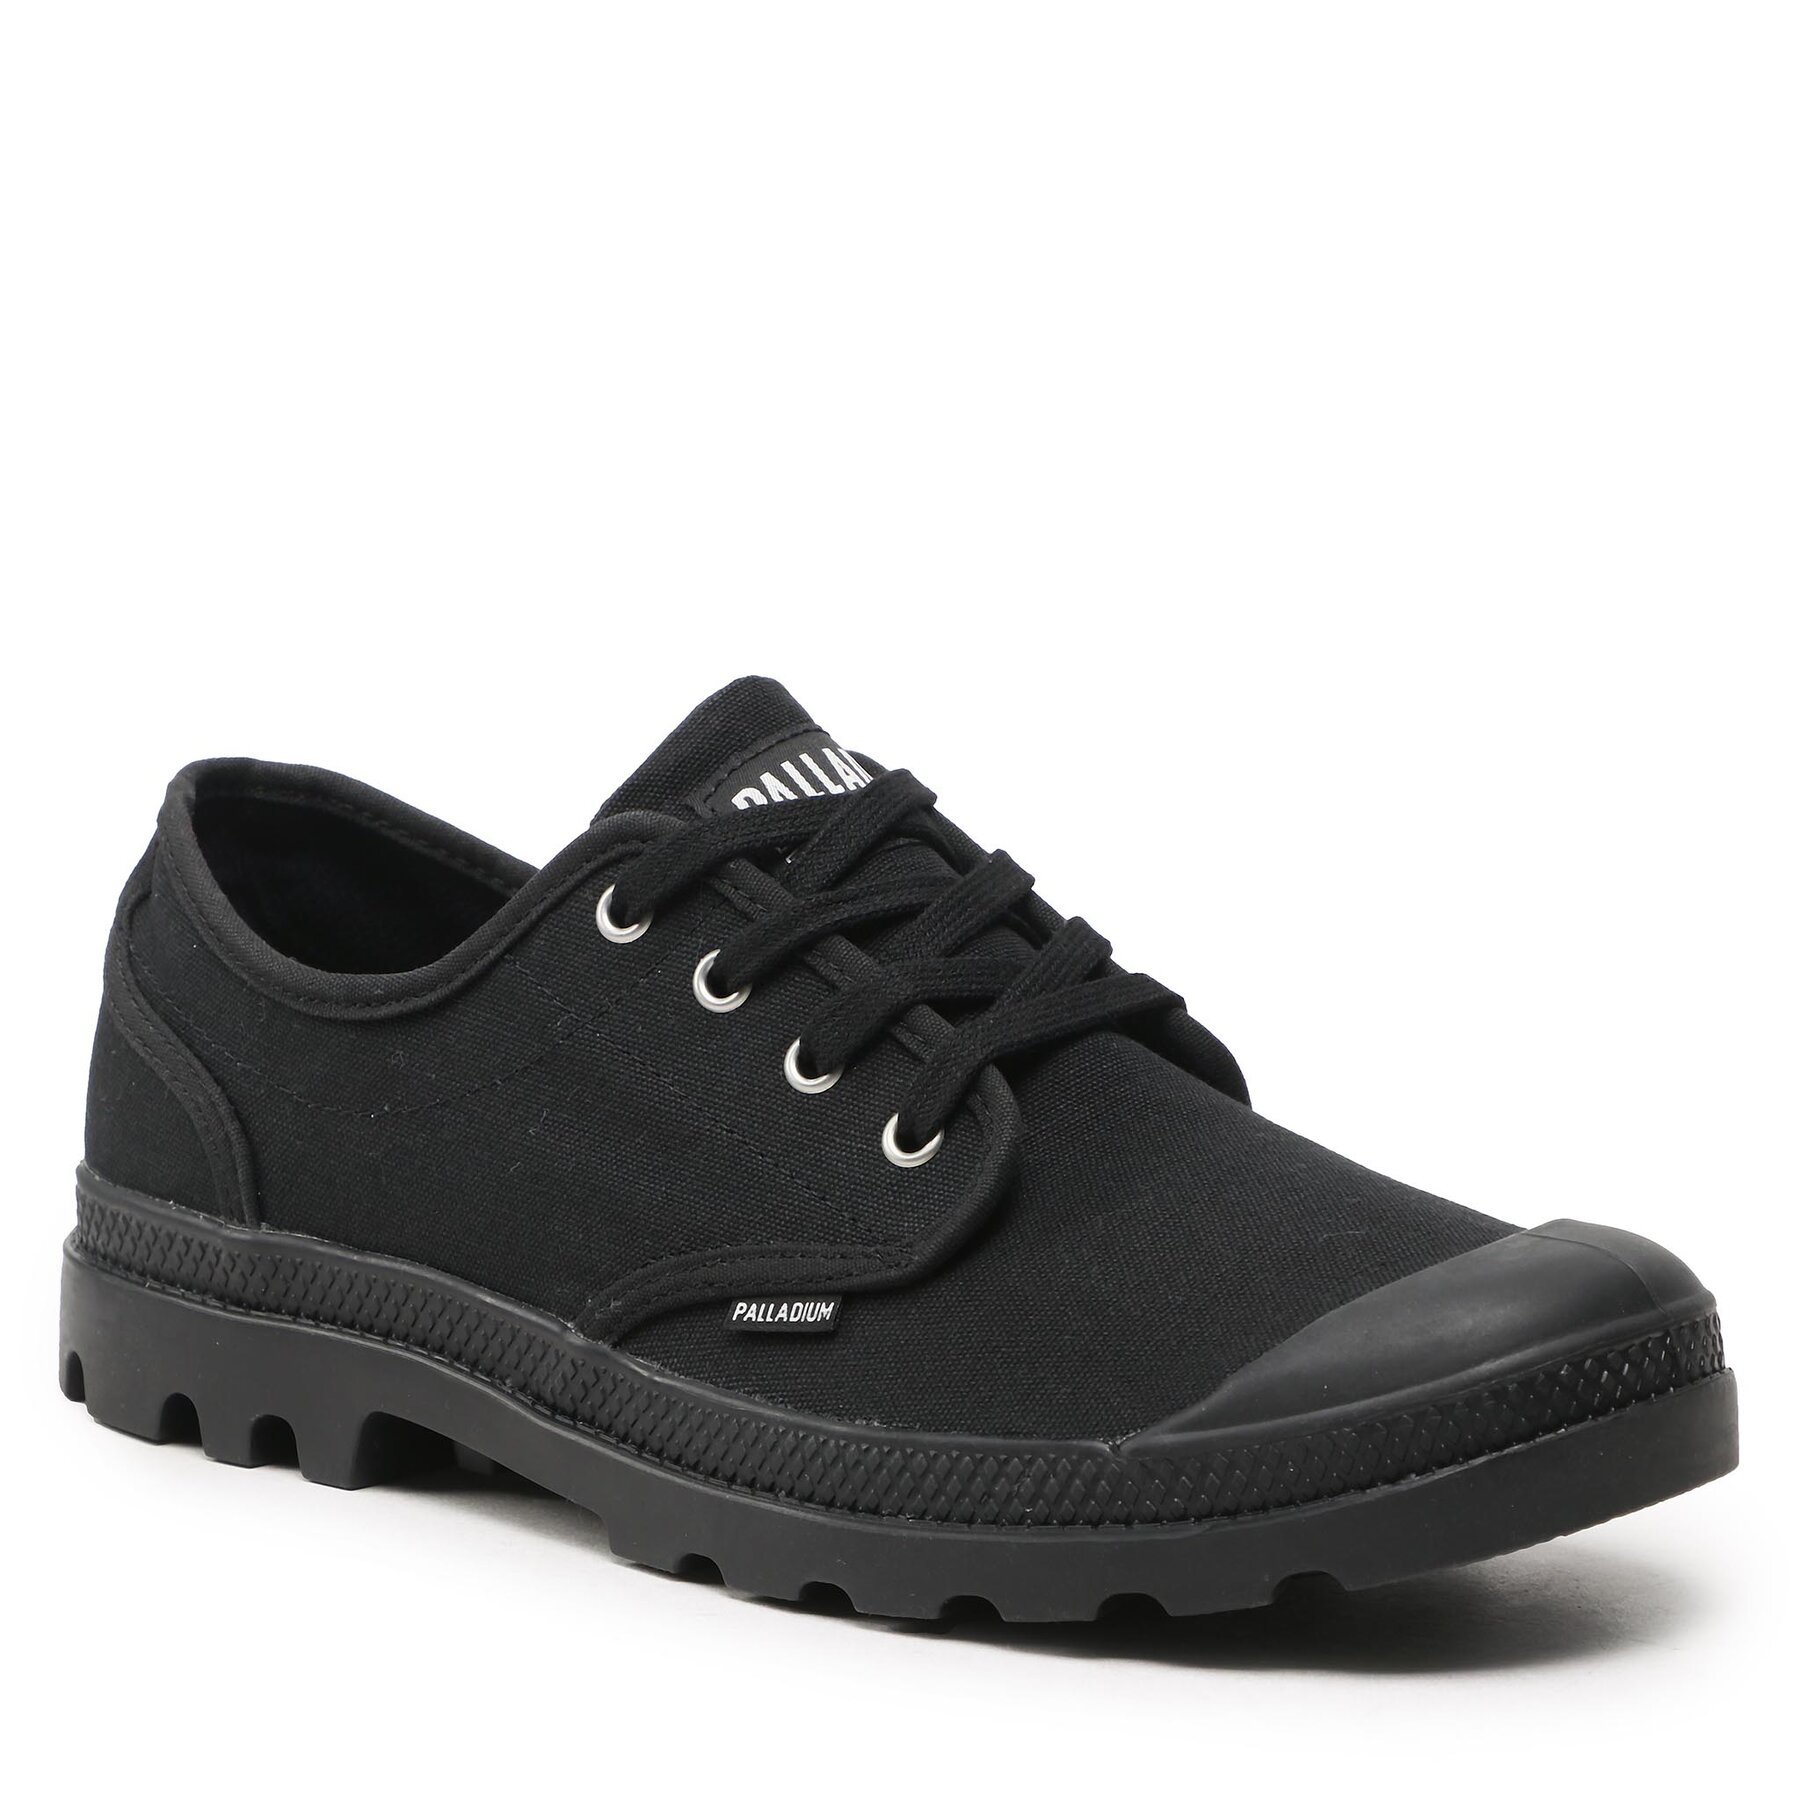 Pantofi Palladium Pampa Oxford 02351-008-M Black